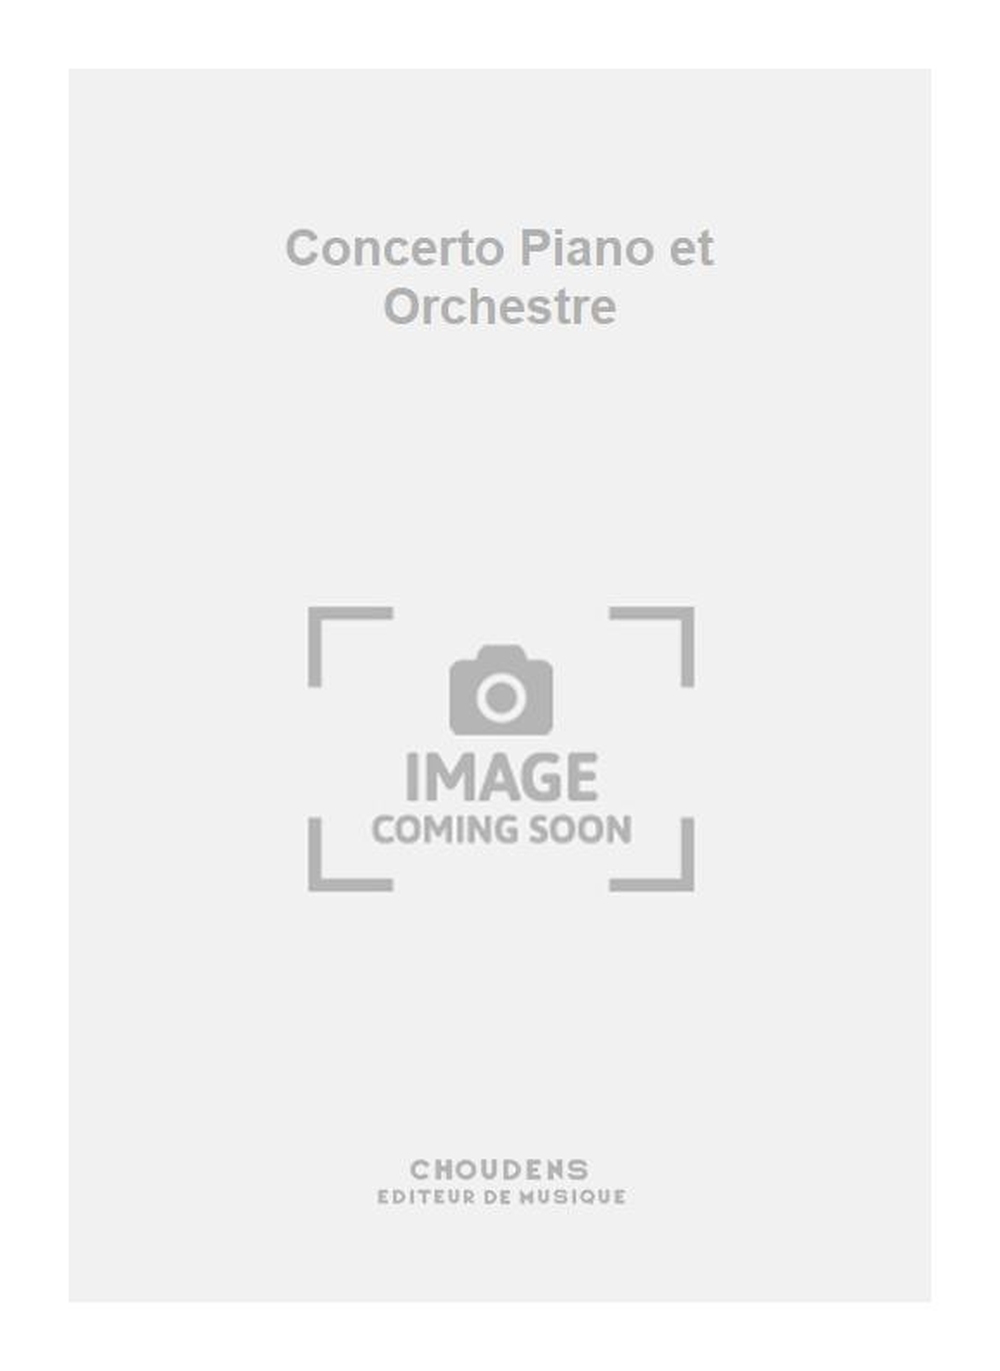 Camerlo: Concerto Piano et Orchestre